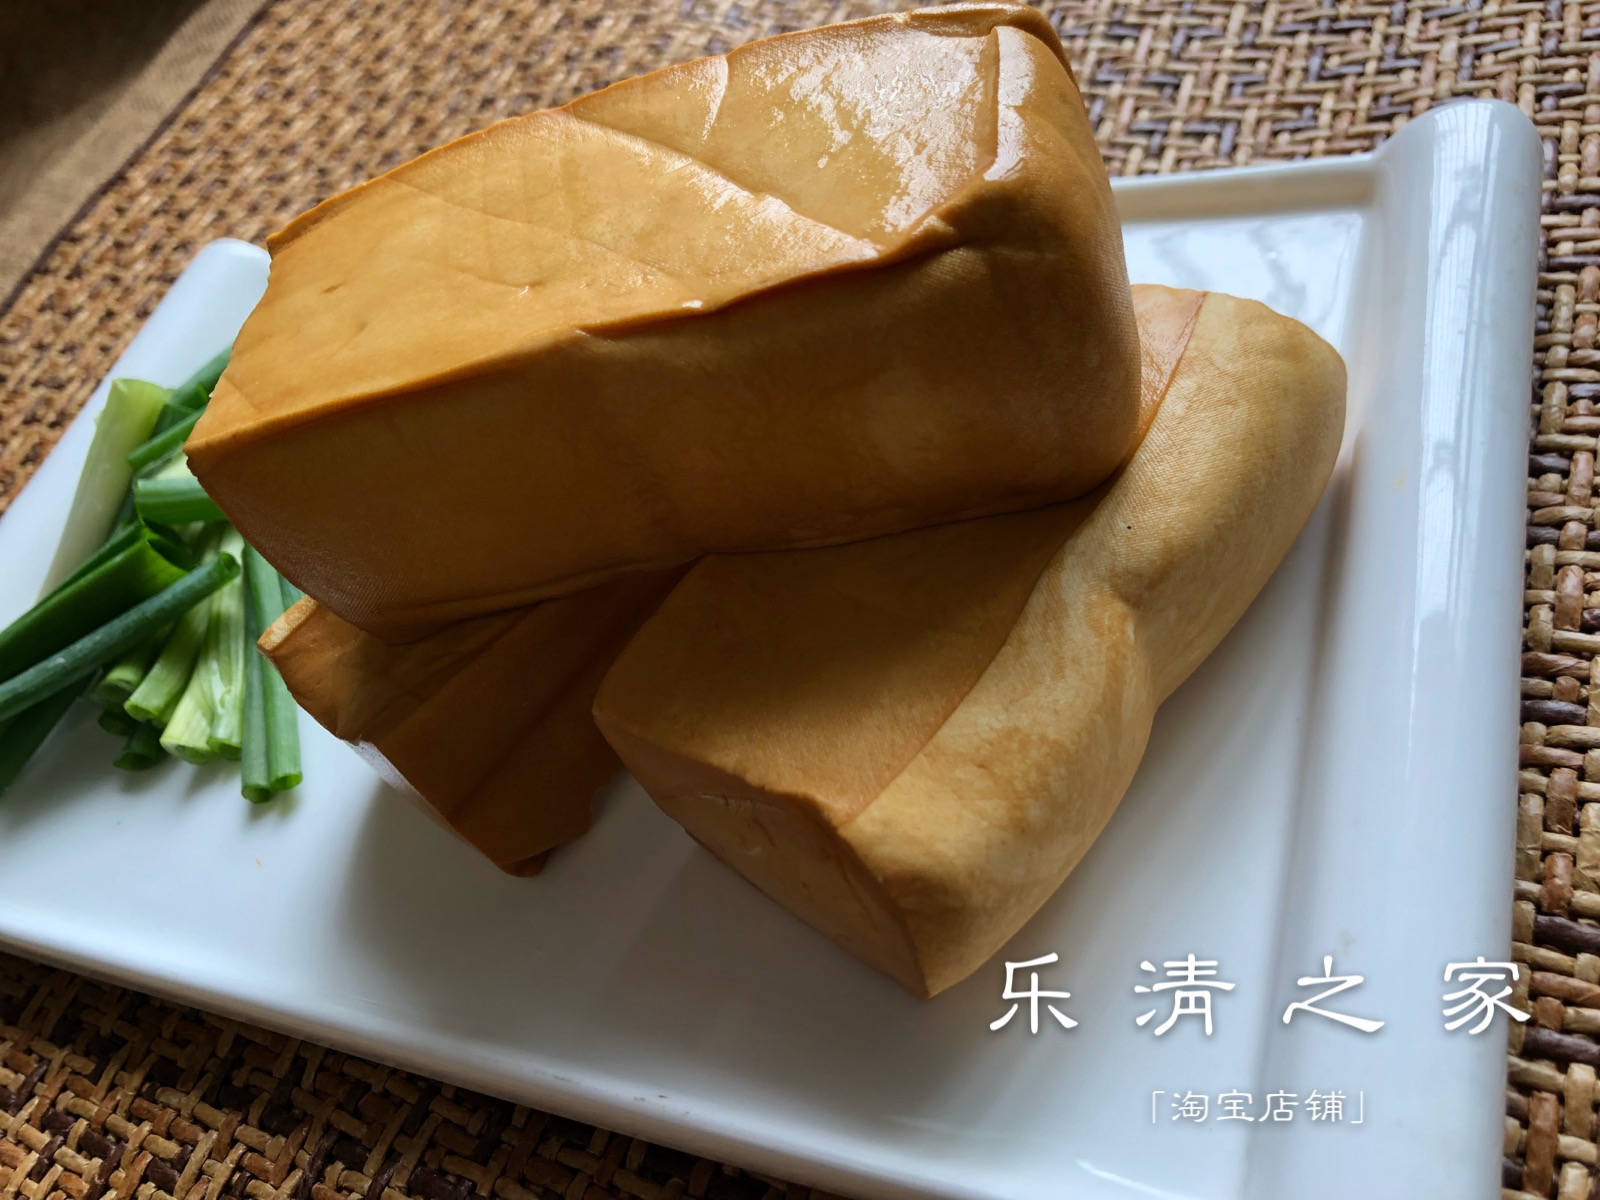 【大长豆腐干】温州本地五香粗嫩豆腐干长方体 2条 乐清之家 柳市